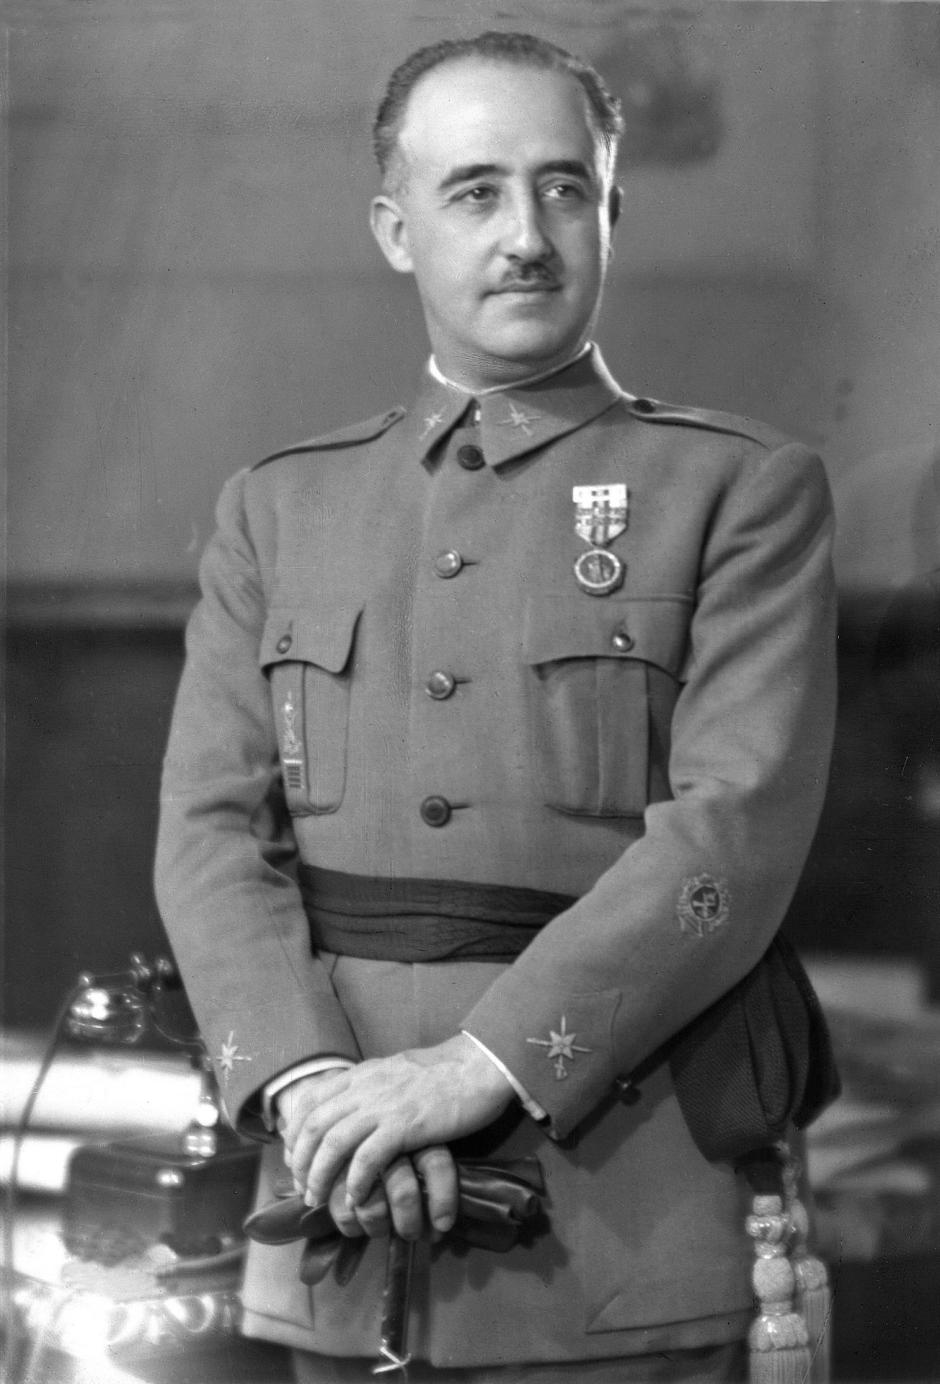 Retrato del general de brigada Francisco Franco Bahamonde